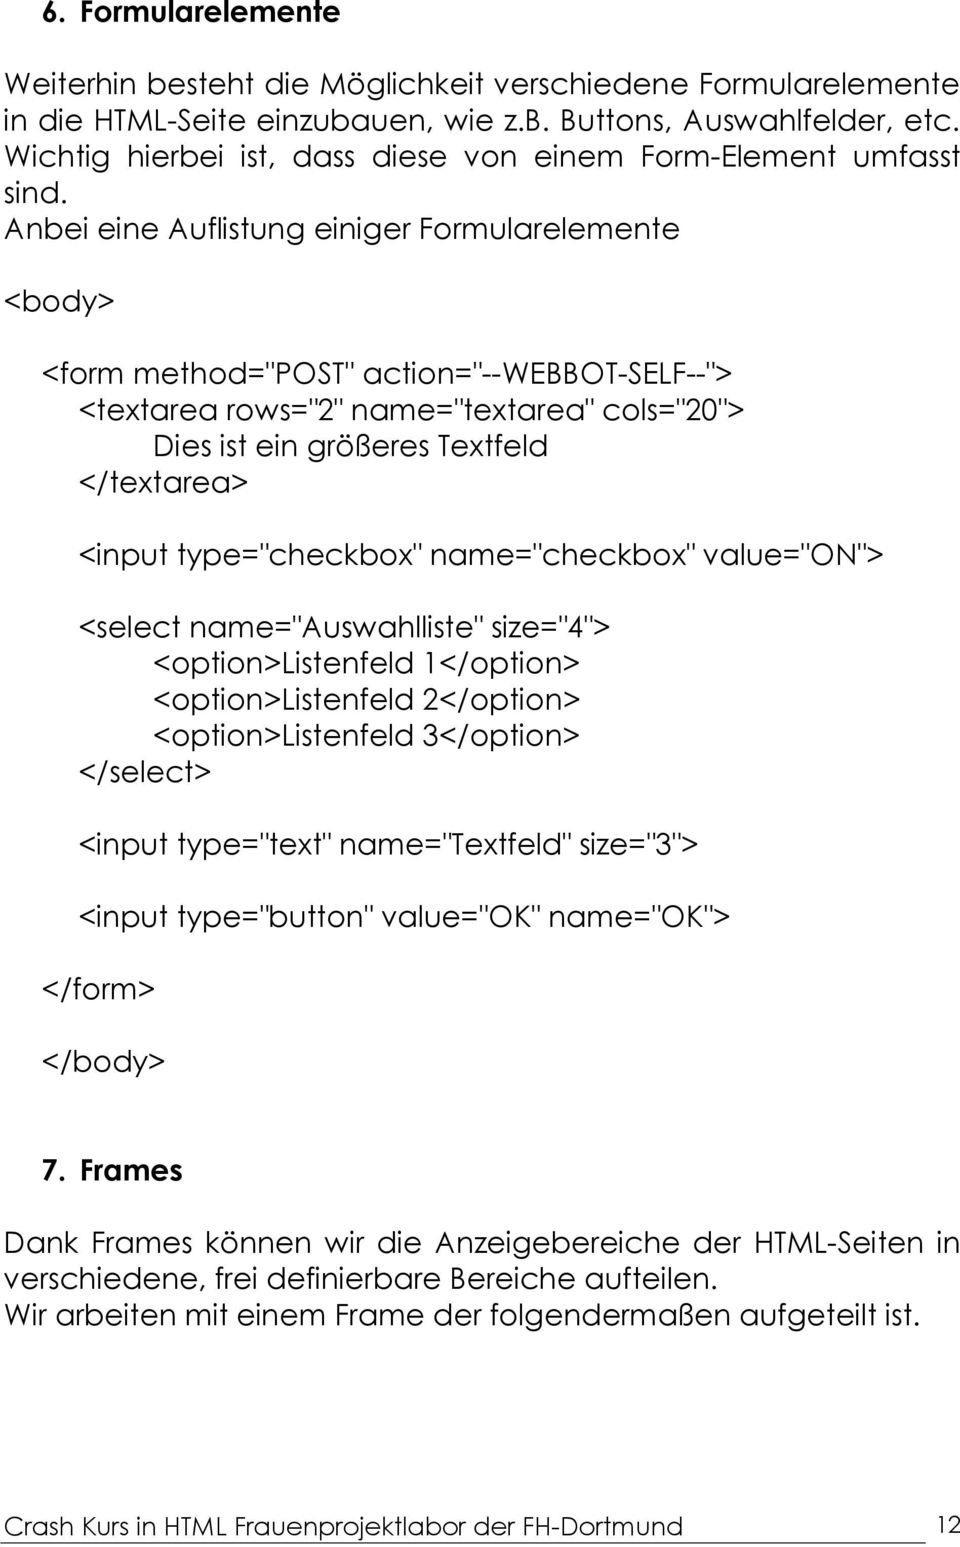 Anbei eine Auflistung einiger Formularelemente <form method="post" action="--webbot-self--"> <textarea rows="2" name="textarea" cols="20"> Dies ist ein größeres Textfeld </textarea> <input